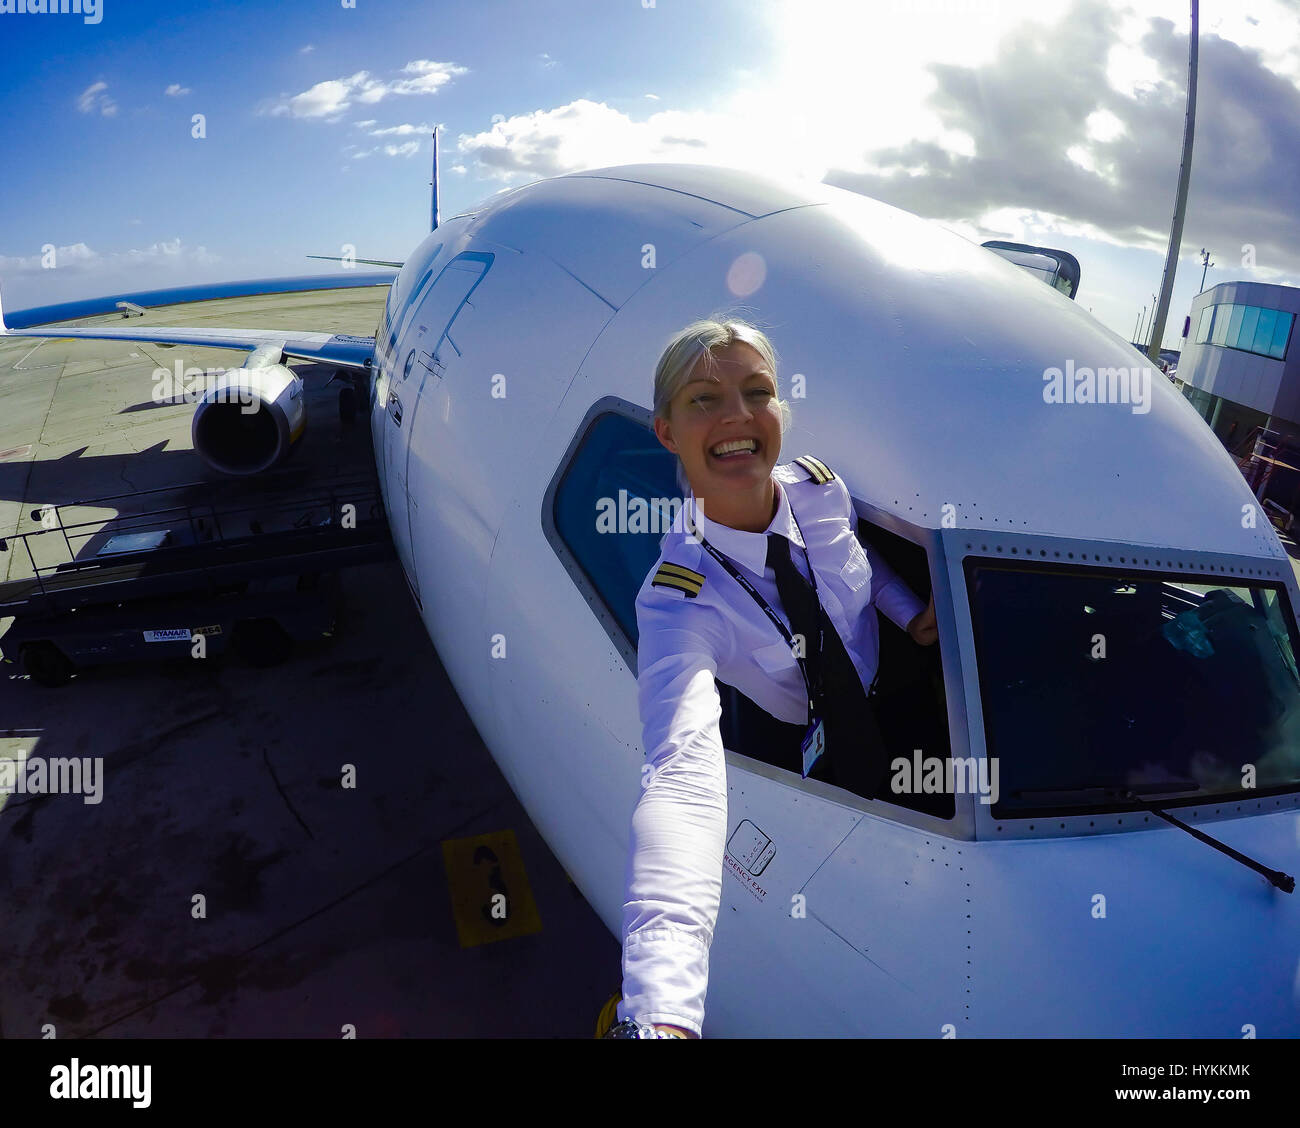 Una rubia piloto explosivo ha venido documentando su sizzling hot  globe-trotting estilo de vida con una serie de cockpit selfies que han  lanzado le en Instagram al estrellato. Con 126 mil seguidores